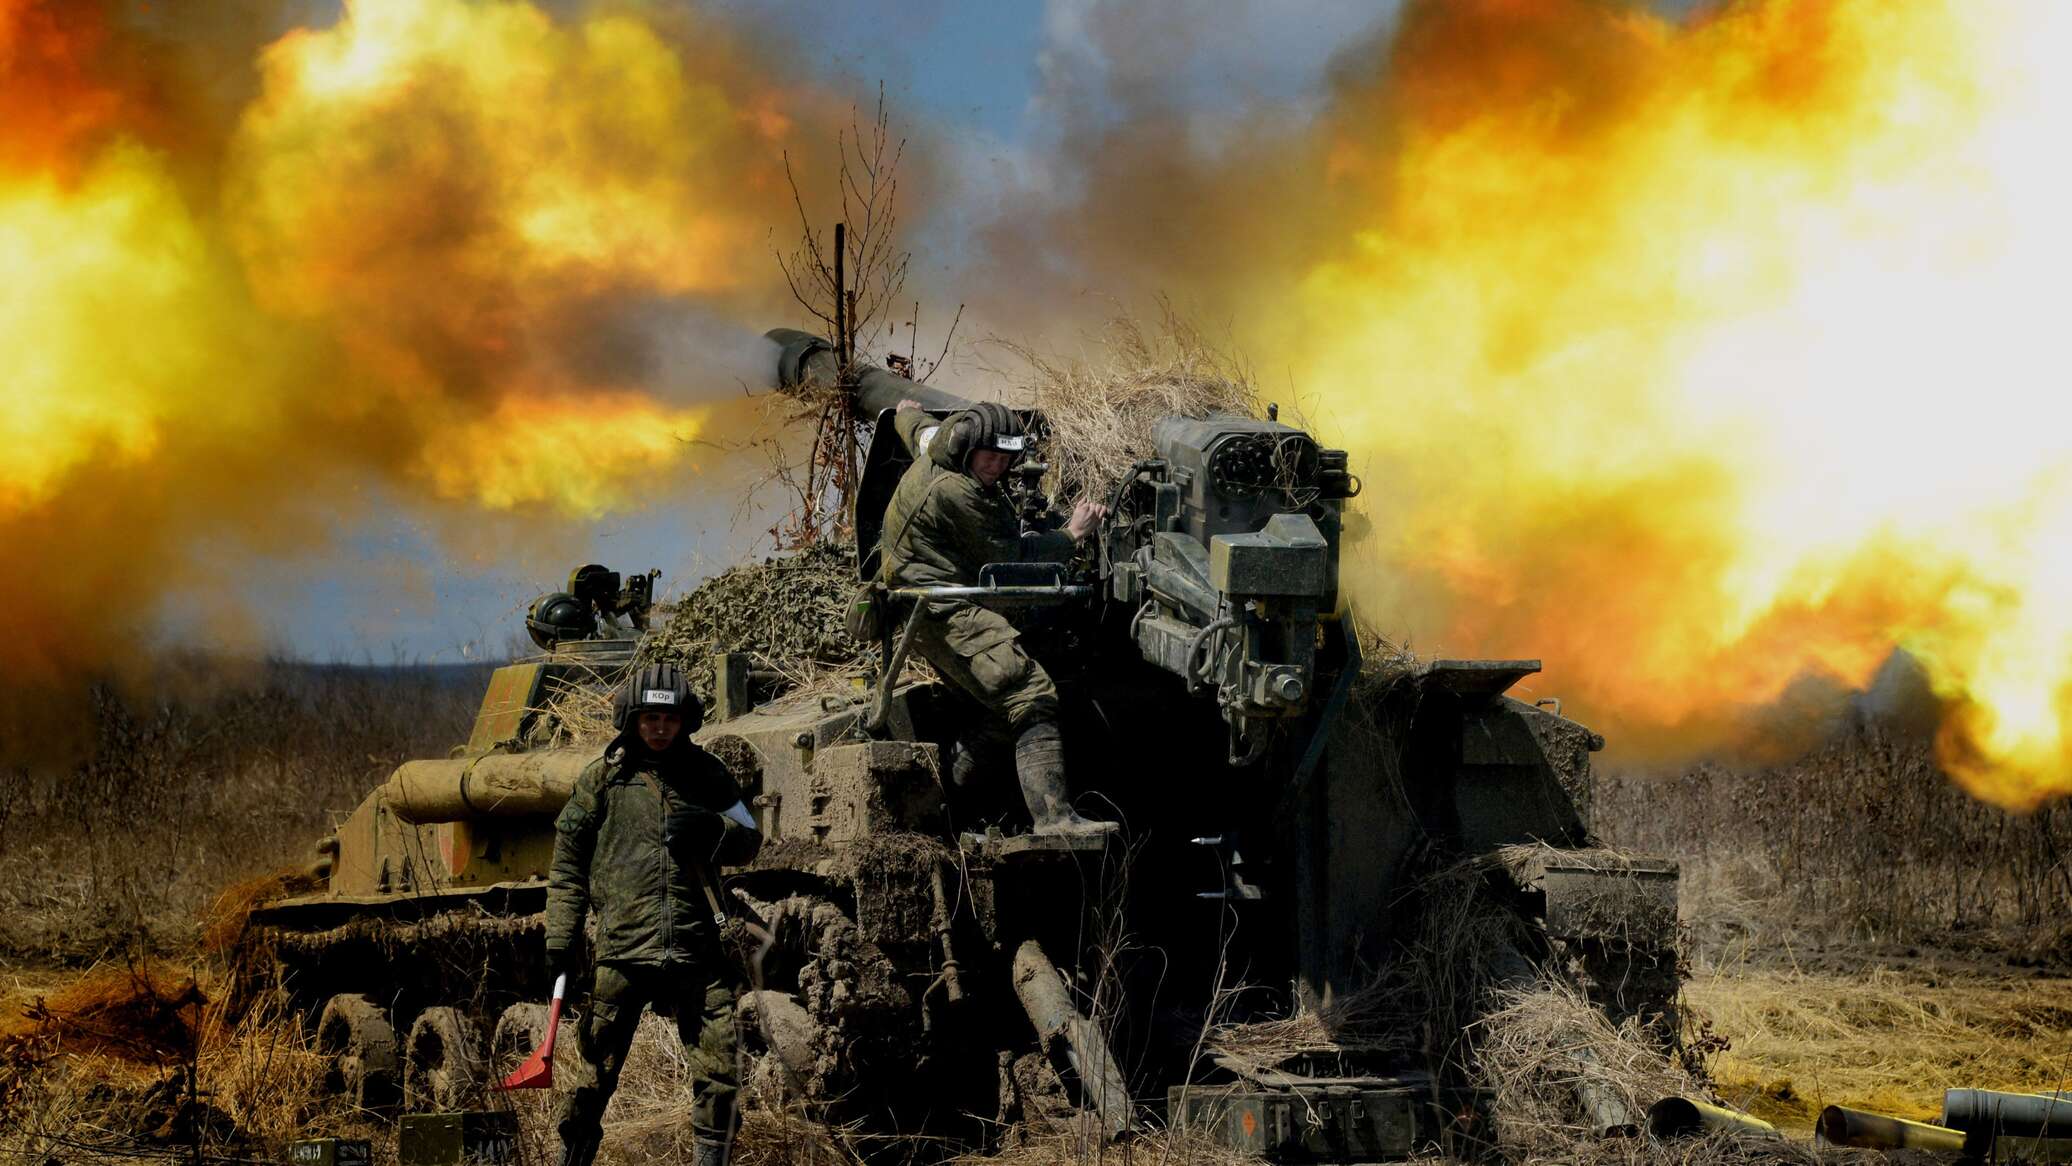 المدفعية الروسية تدمر 5 مدافع "هاوتزر" و3 مدافع "هاون" أوكرانية